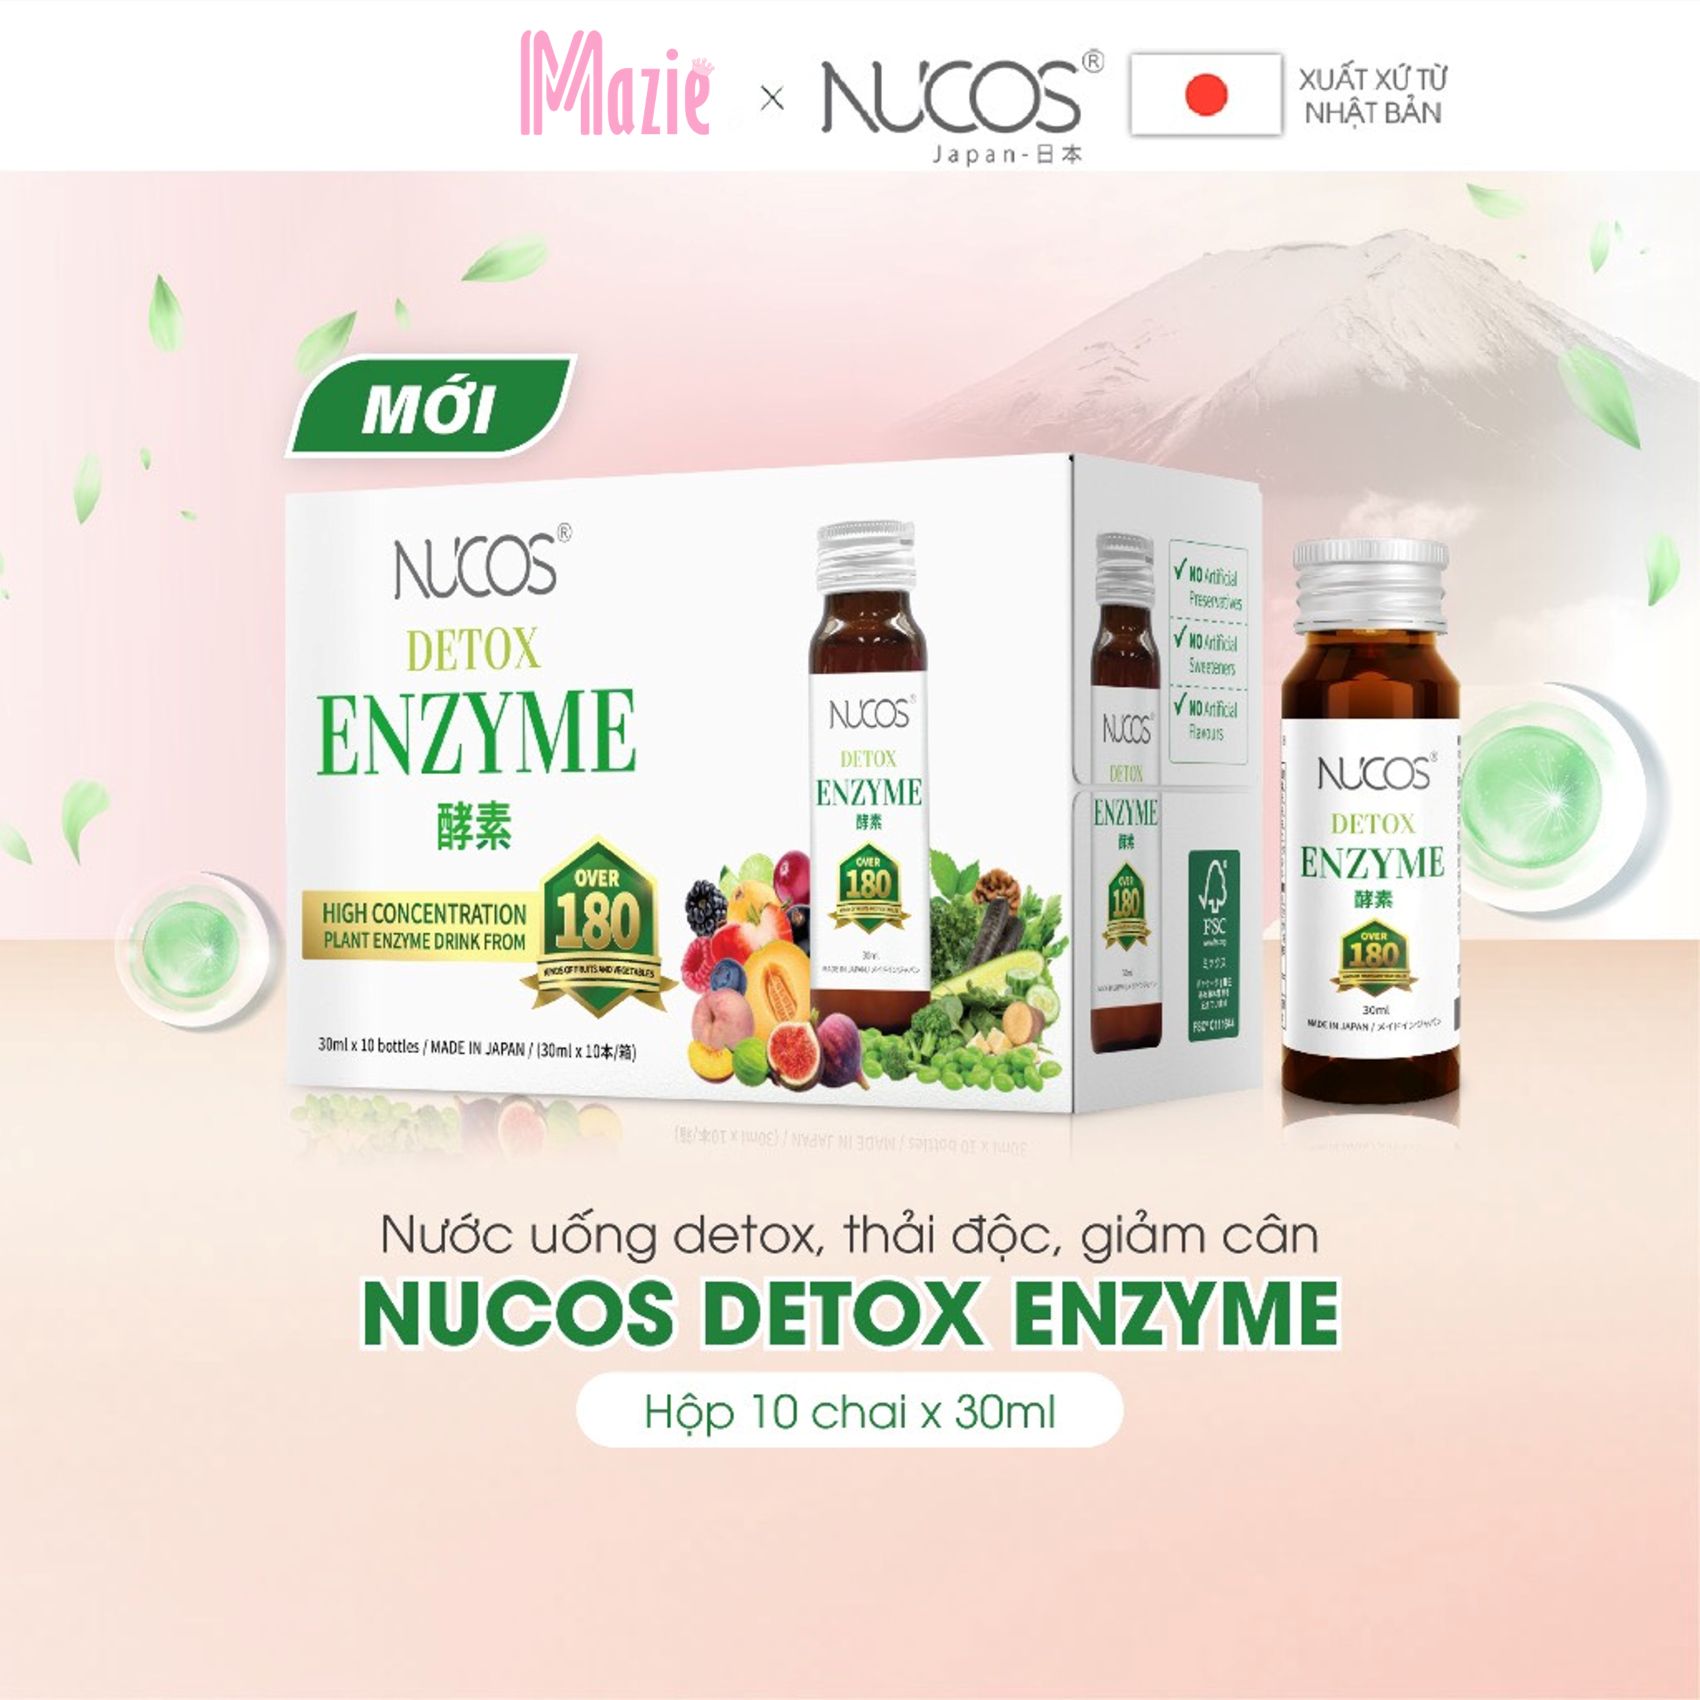 Detox thải độc cải thiện vóc dáng Nucos Detox Enzyme 30ml x 10 chai